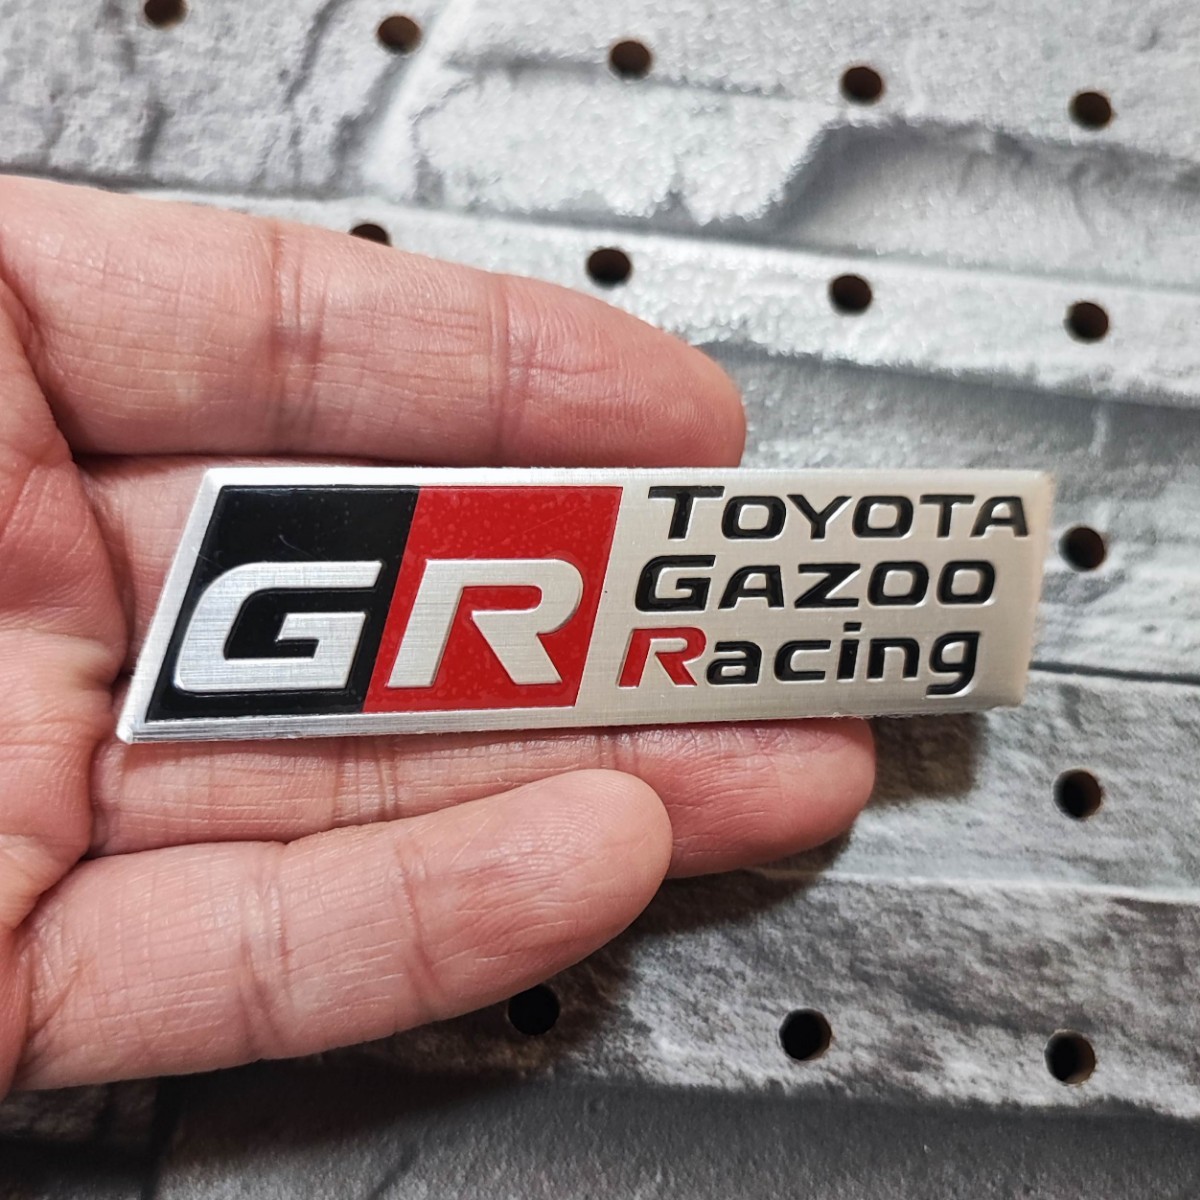 GR GAZOO Racing B 軽量アルミ製 エンブレム■プリウスPHV カローラ アクア HILUX ランドクルーザー C-HR ヤリスクロス 86 SUPRA ハリアーの画像1